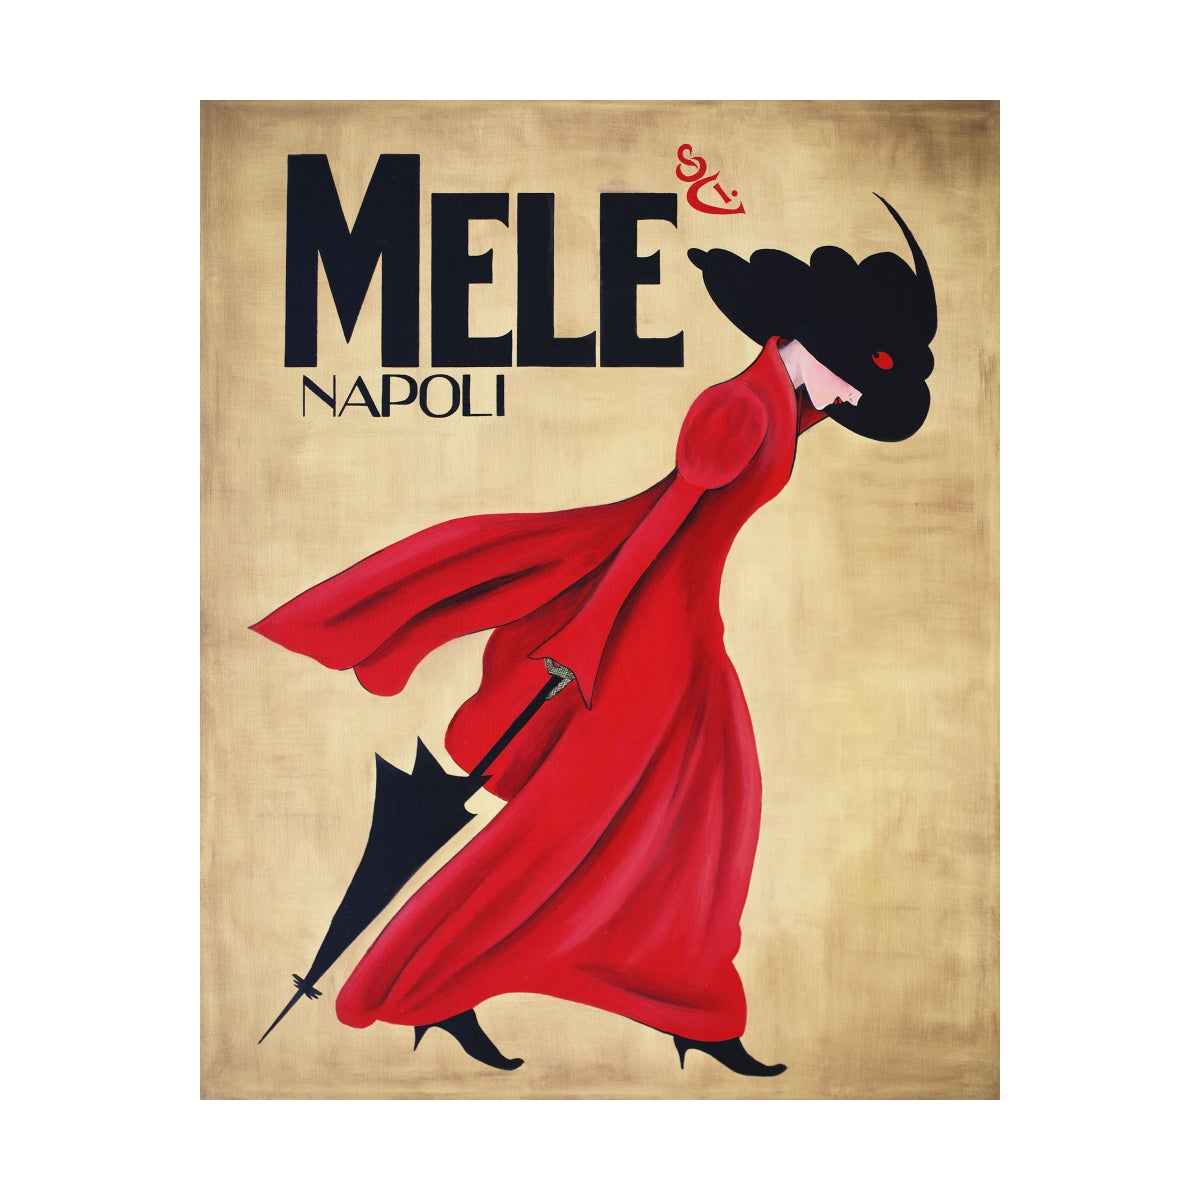 Mele Napoli GALLERY WRAP